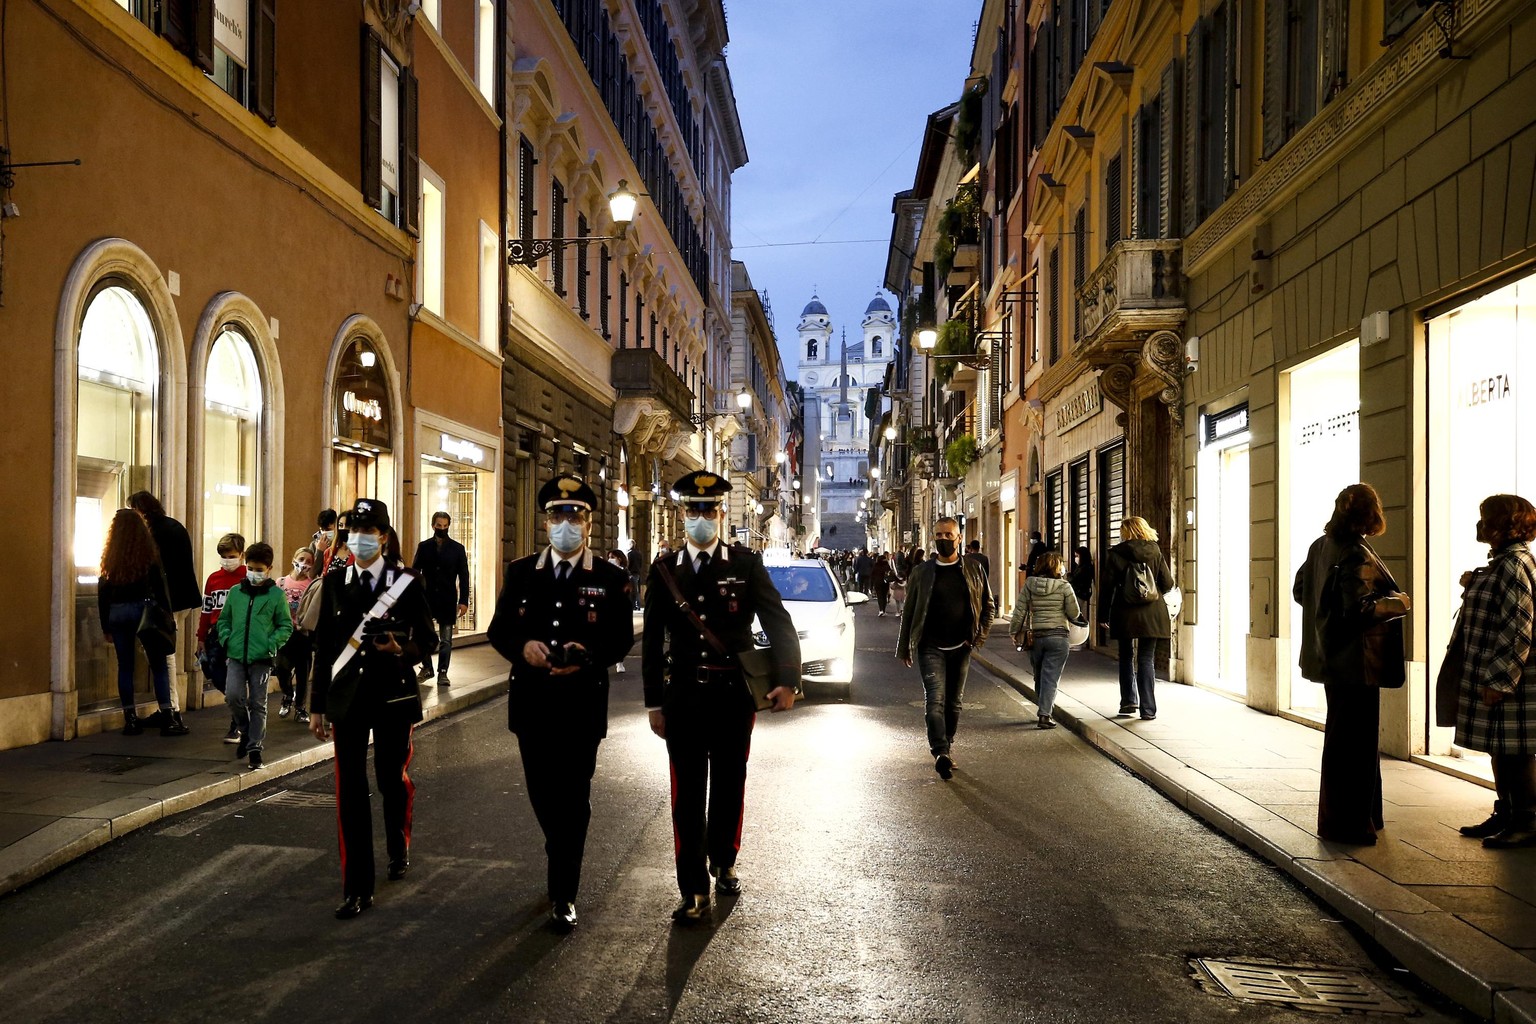 14.11.2020, Italien, Rom: Polizeibeamte gehen in der Einkaufsstraße Via dei Condotti. In Rom werden vorübergehend Polizeikontrollen in der beliebten Einkaufszone durchgeführt, um zur Eindämmung der Co ...